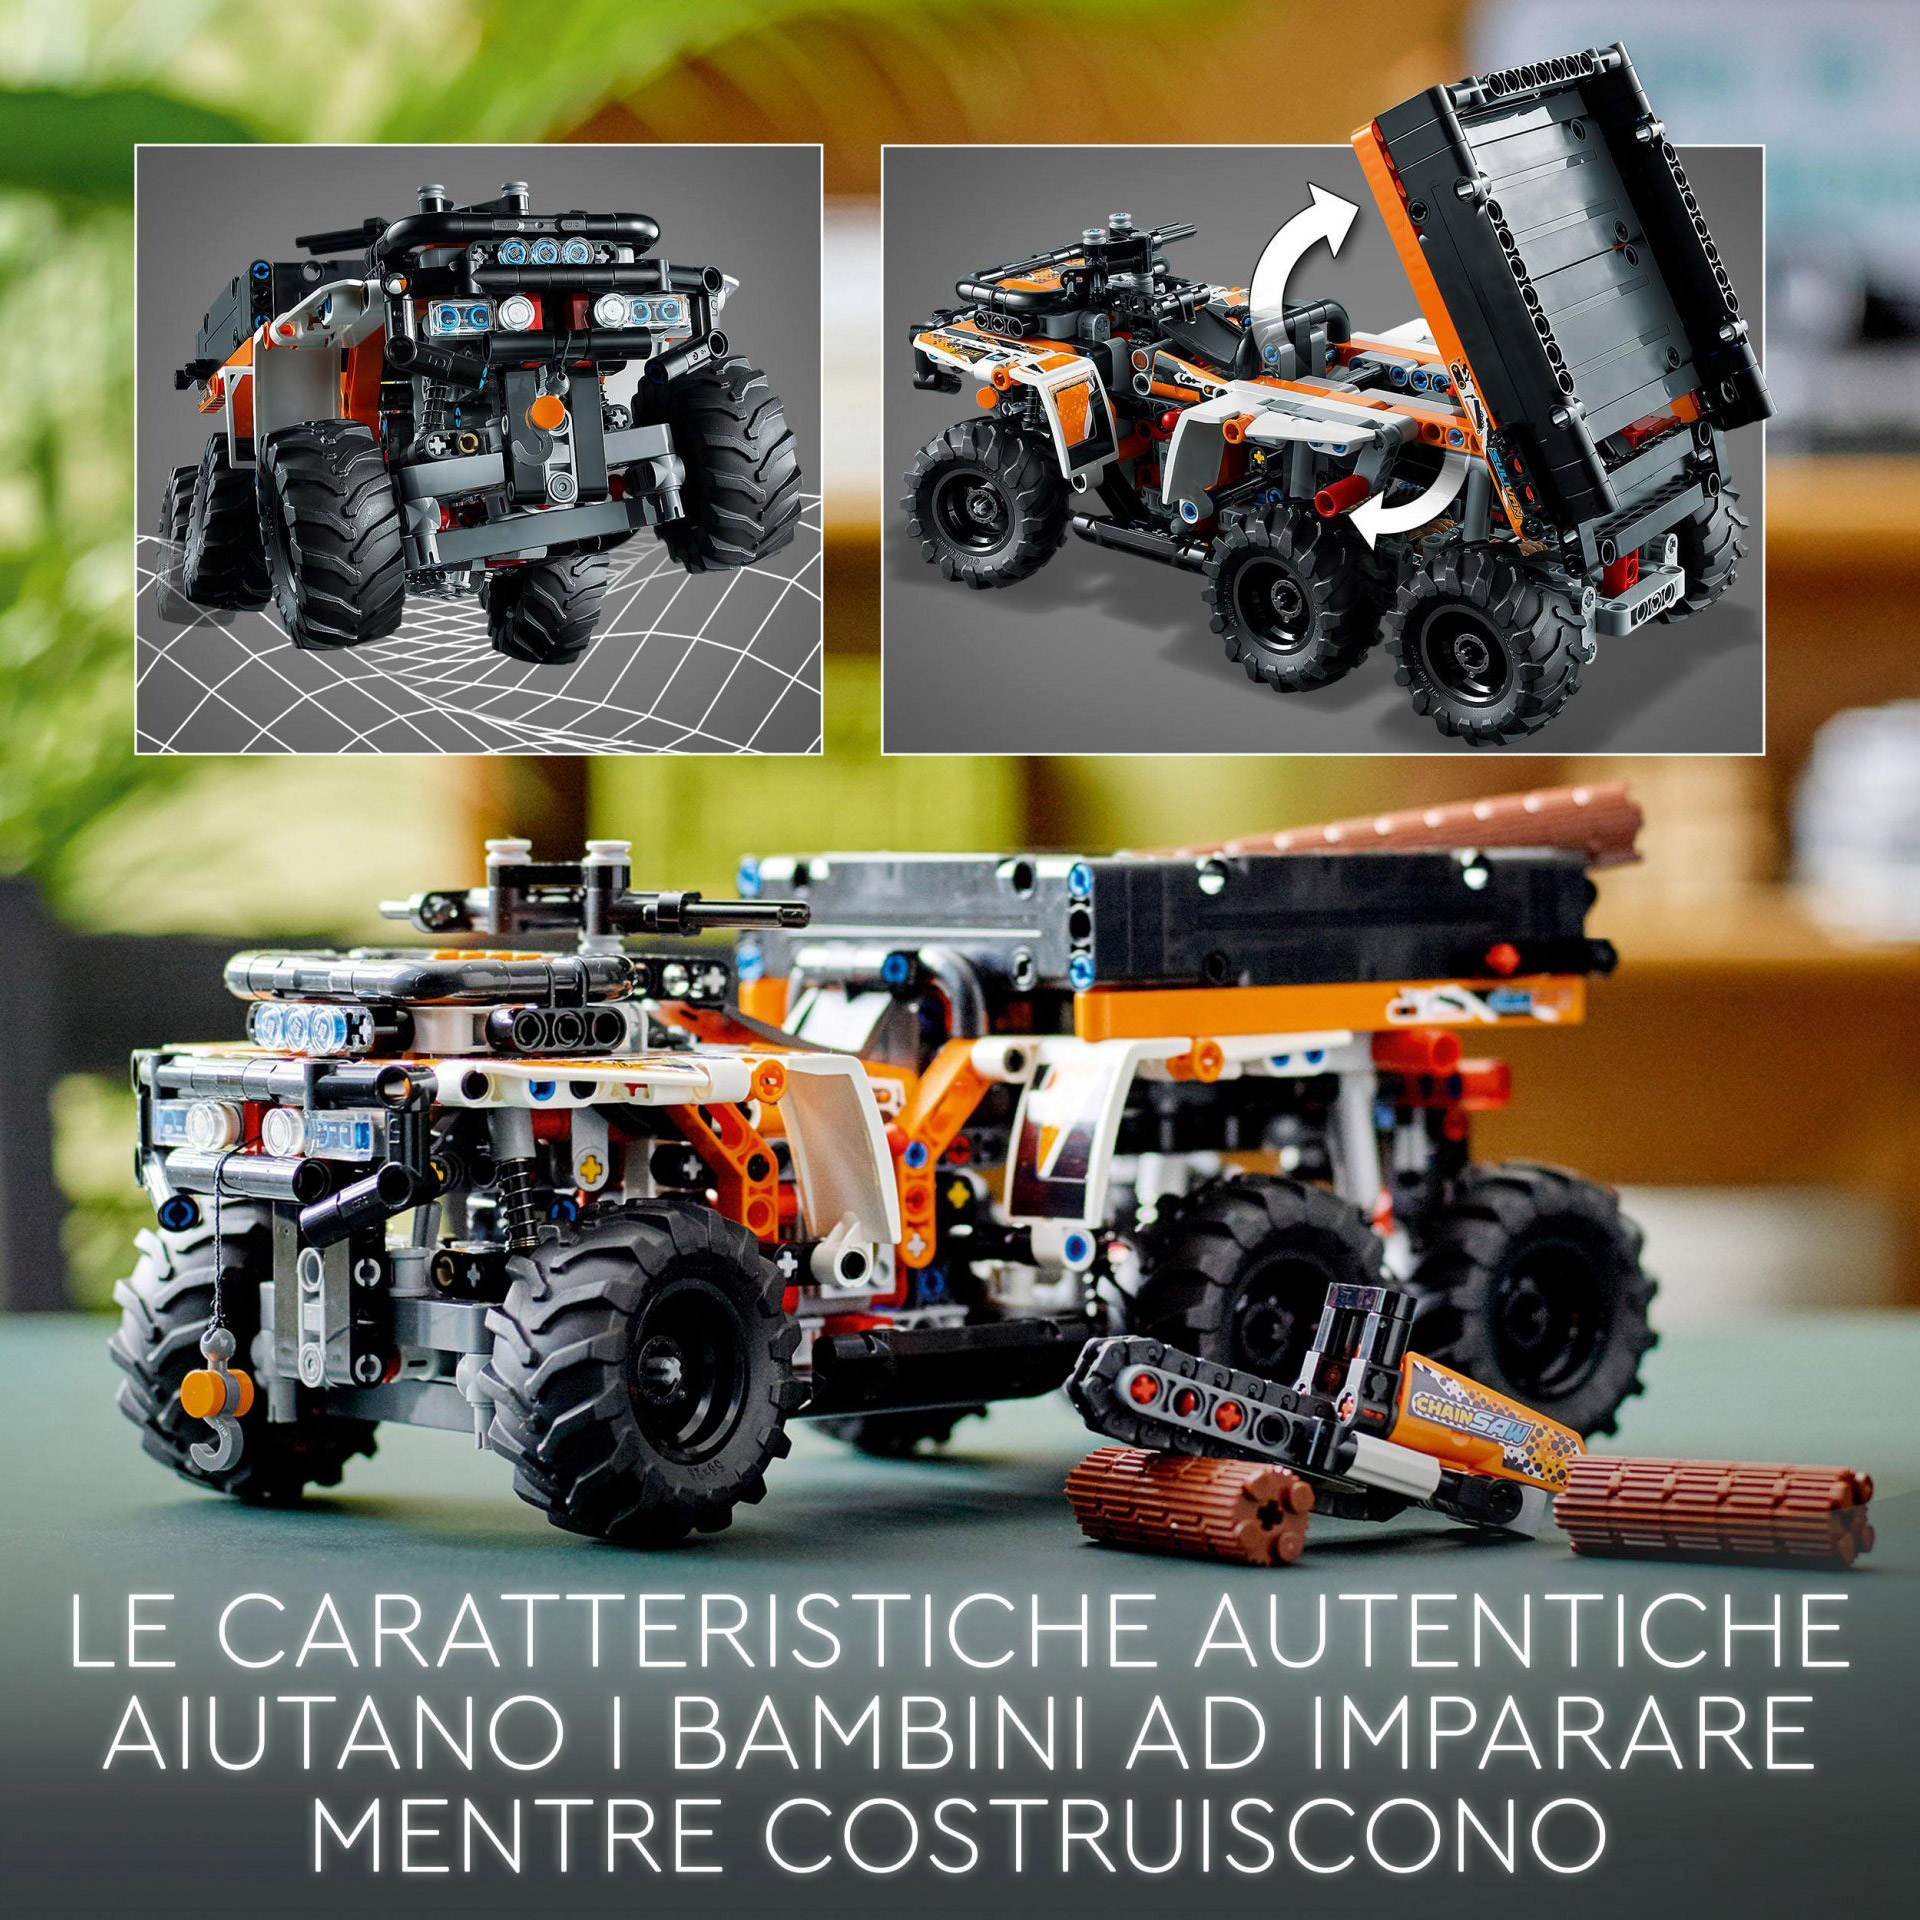 LEGO Technic Fuoristrada, Camion Giocattolo a 6 Ruote, Mattoncini da Costruzione 42139, , large